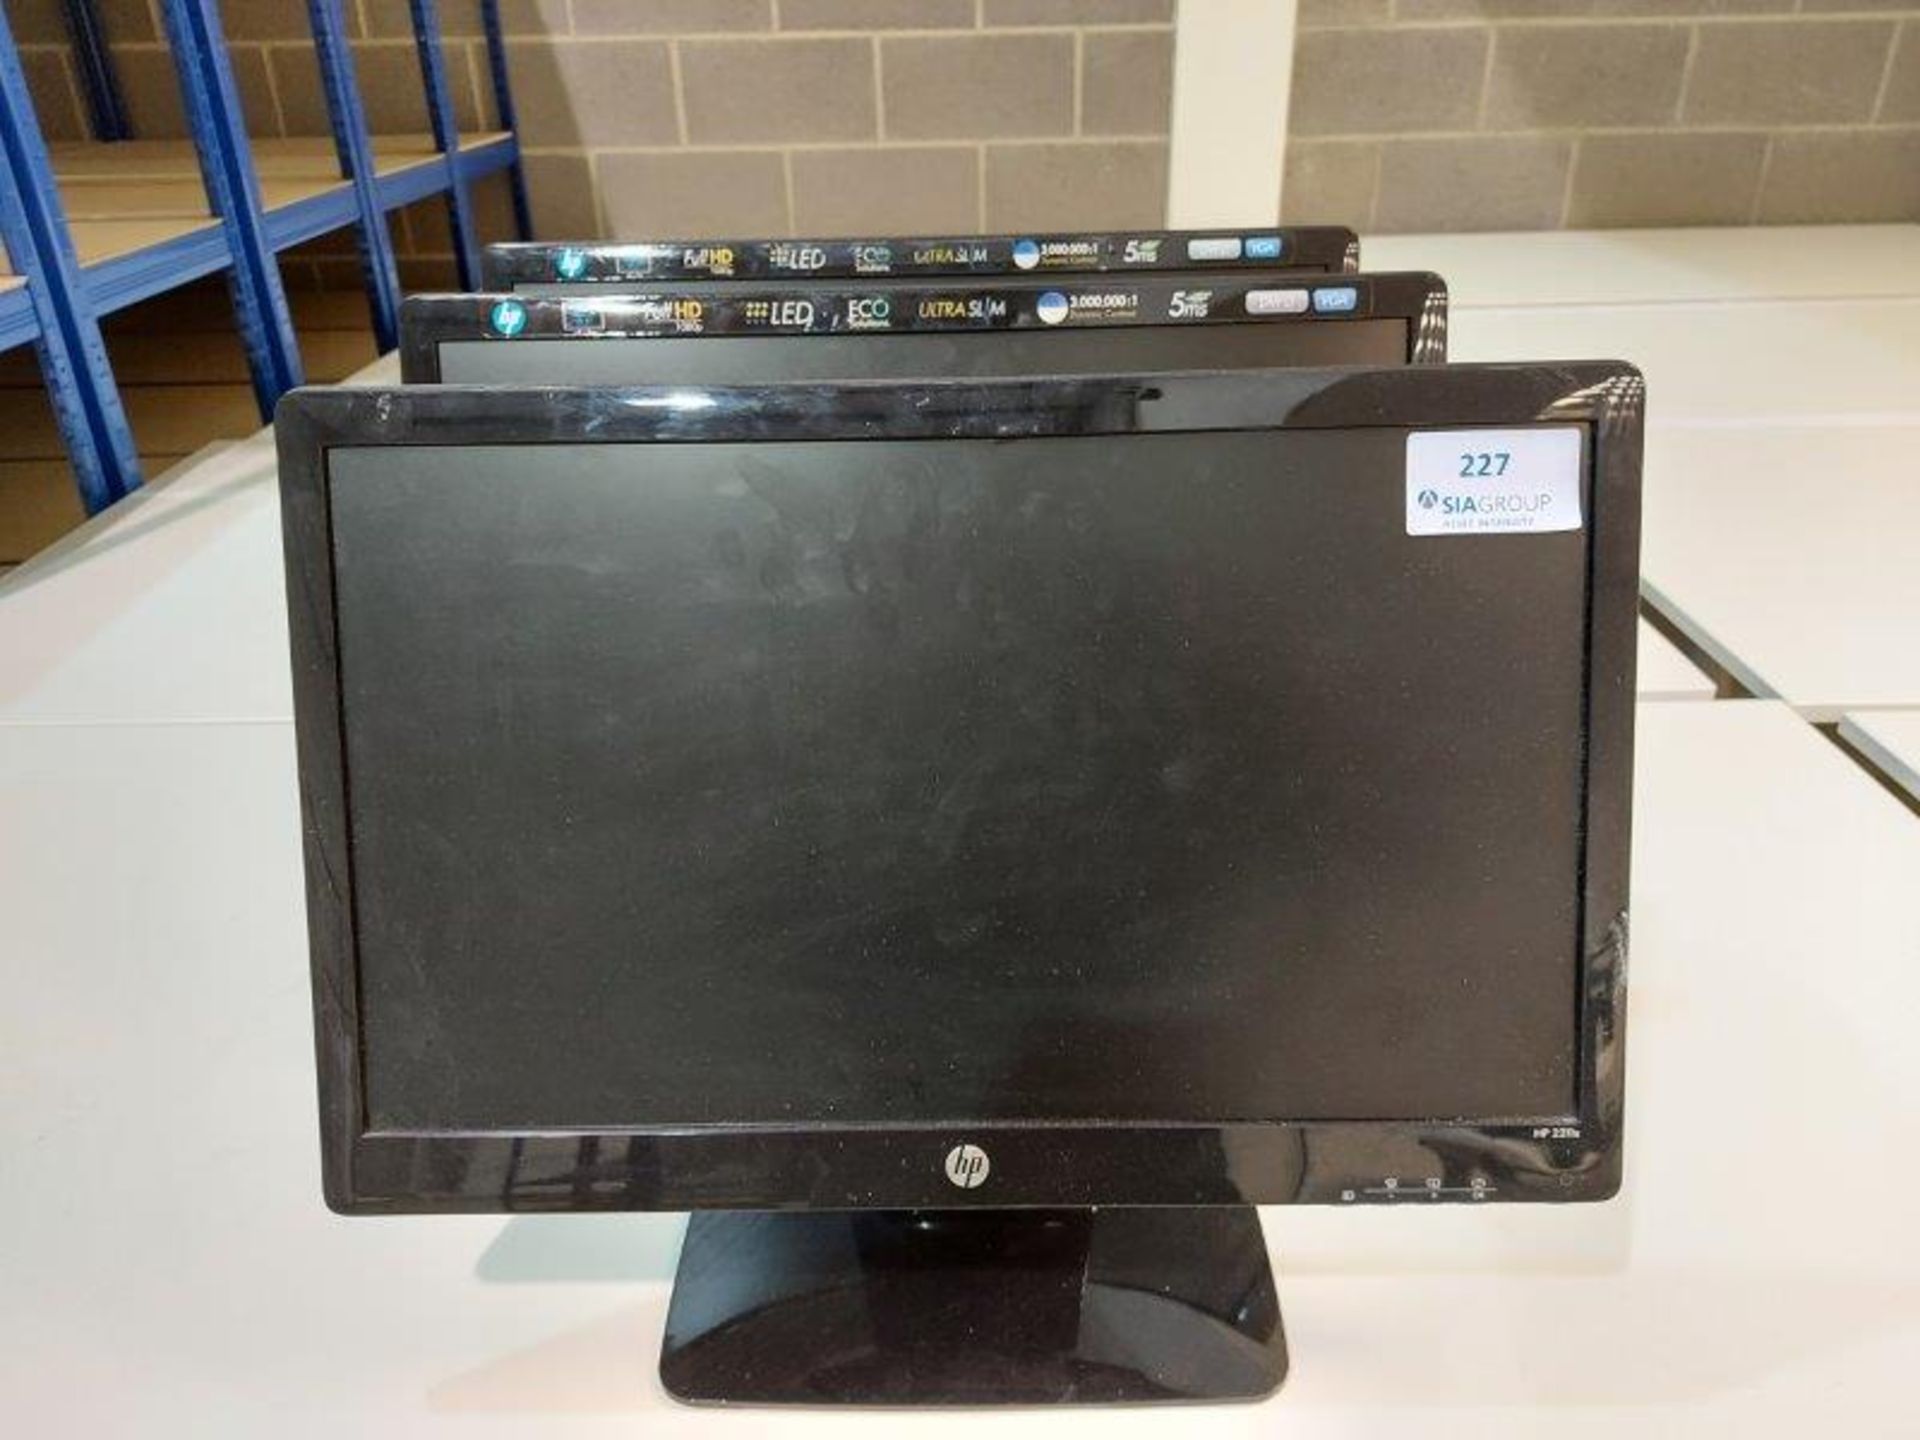 (3) HP 2211x 22" desktop monitors